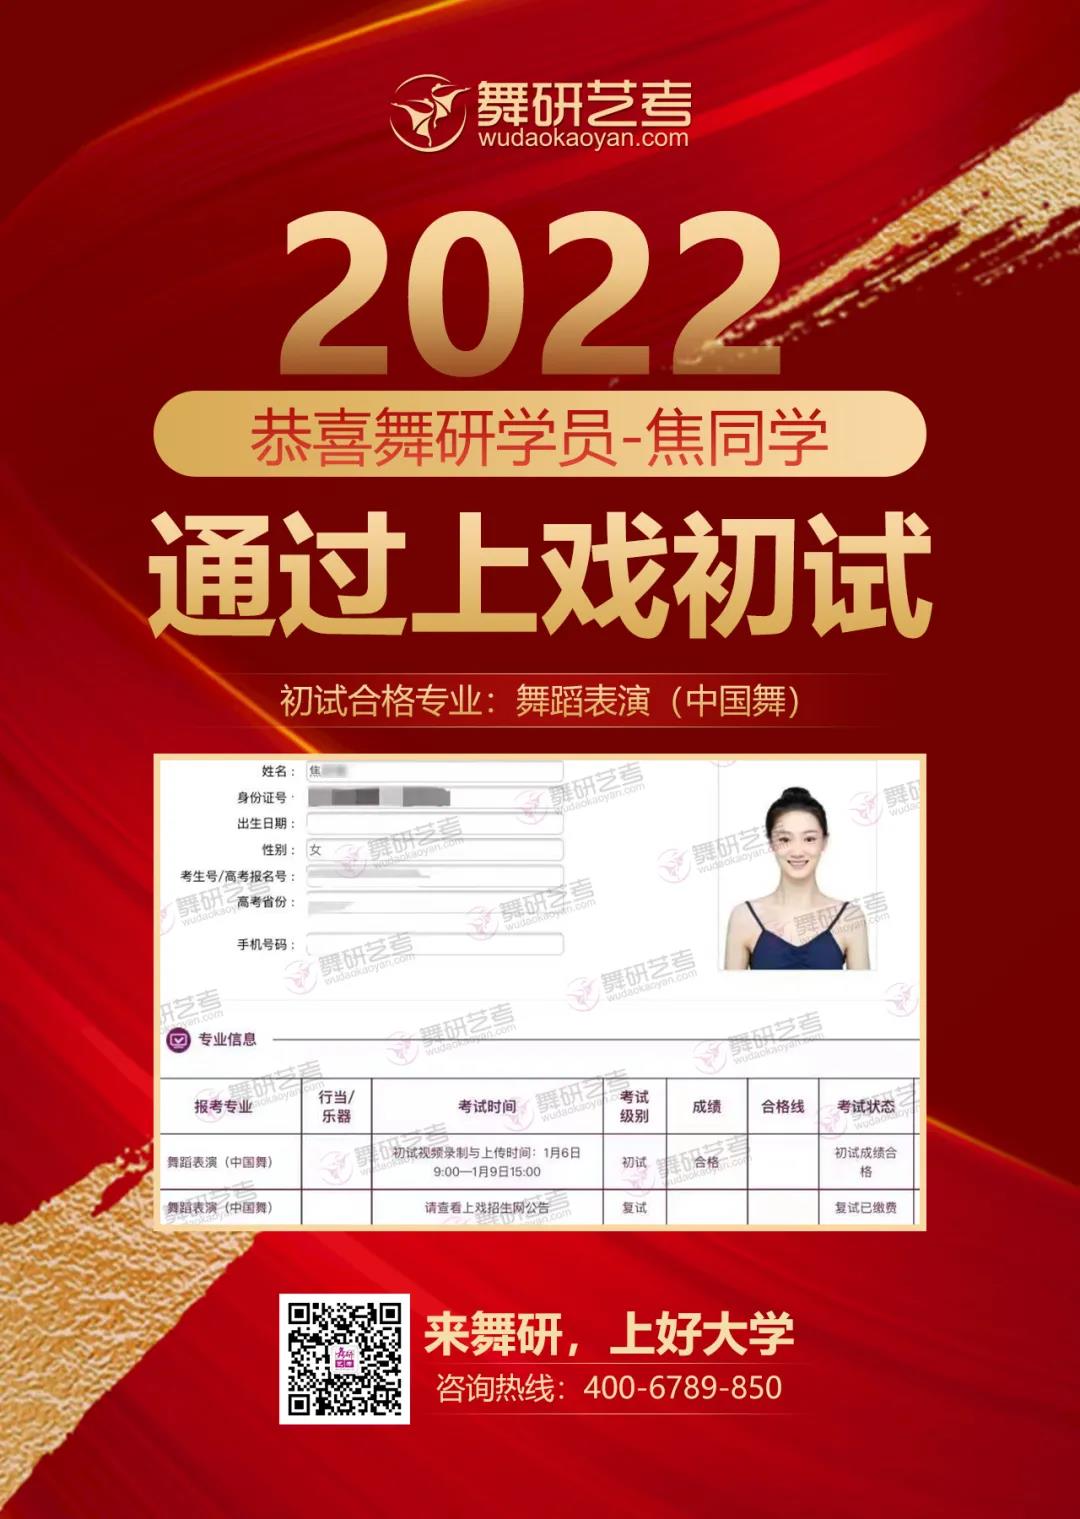 2022年舞研舞蹈上海戏剧学院校考初试捷报：60余人通过上戏初试！全国初试合格的女生中，约1/4来自舞研！